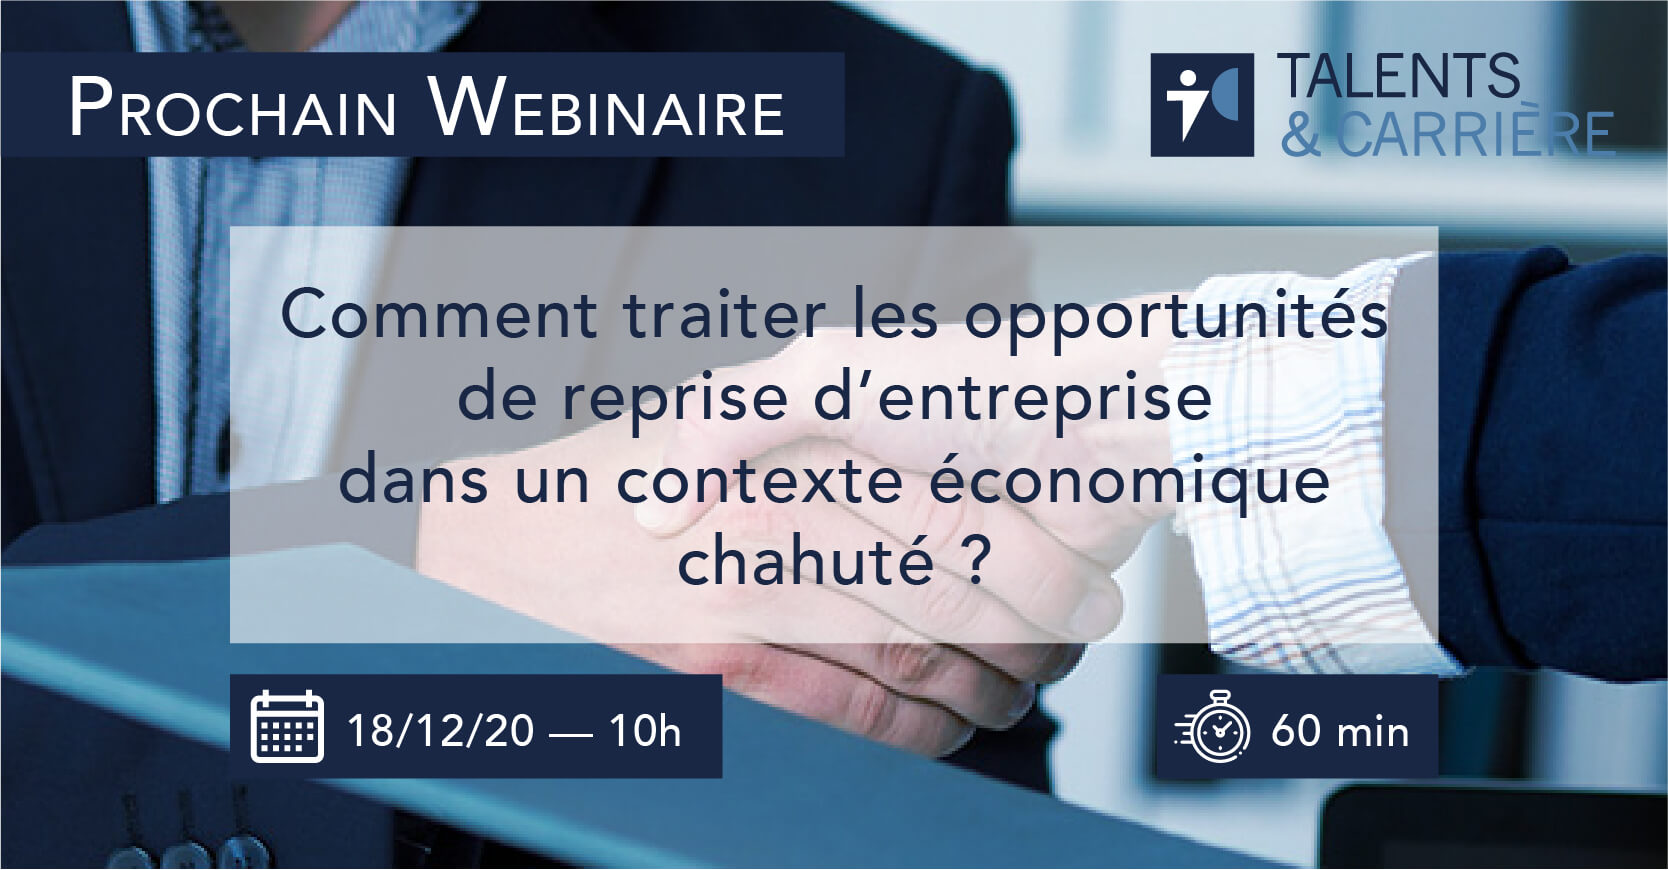 Webinaire 18 décembre 2020 — "Comment traiter les opportunités de reprise d’entreprise dans un contexte économique chahuté ?"